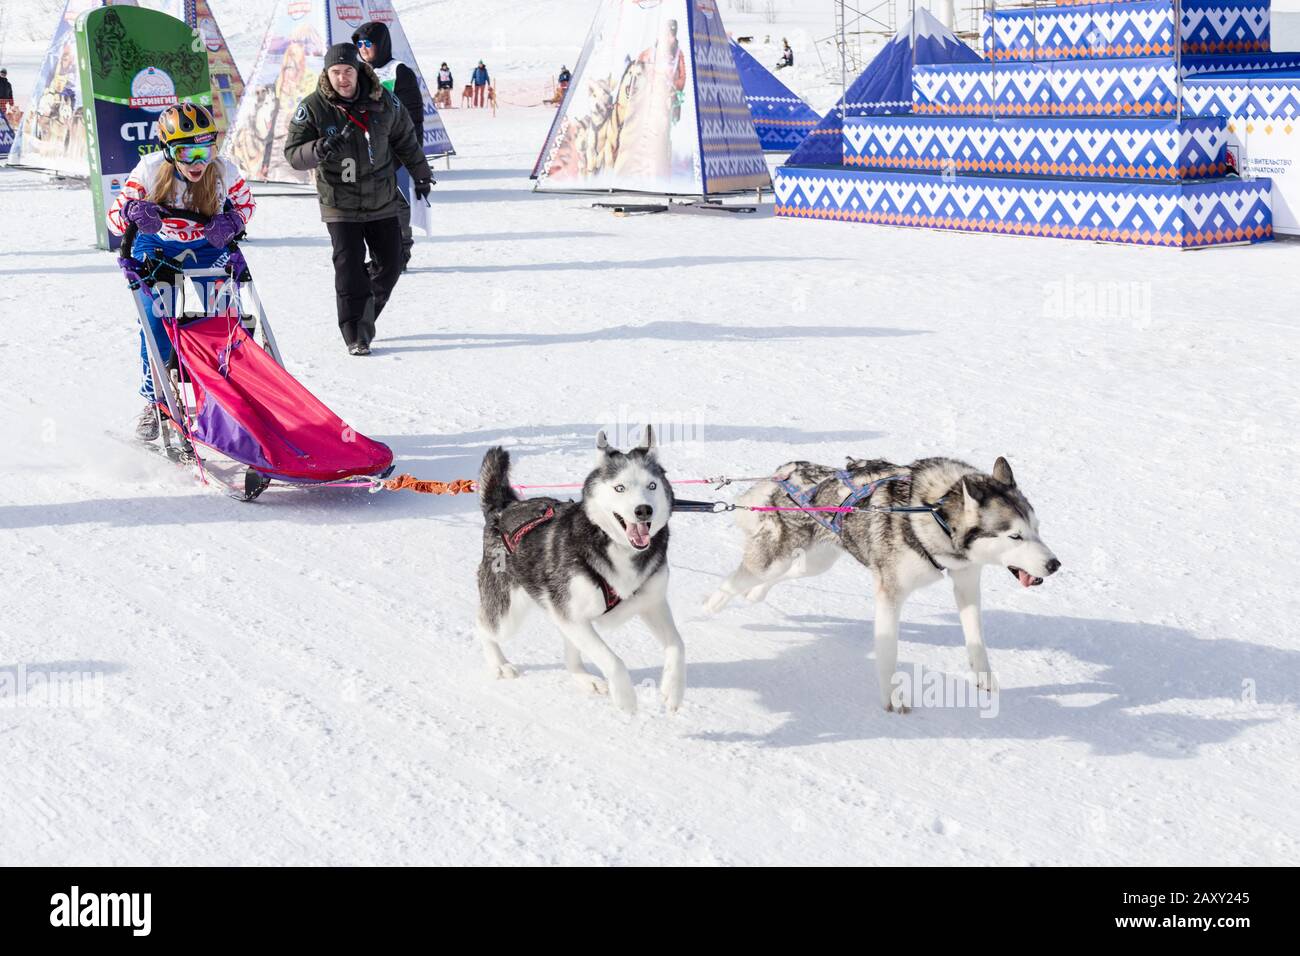 L'équipe féminine de chiens de traîneau à chiens, qui s'exécute sur la distance enneigée de la course pendant les concours pour enfants Kamchatka Sledge Dog Race Dyulin (Beringia). Petropavlovsk Banque D'Images